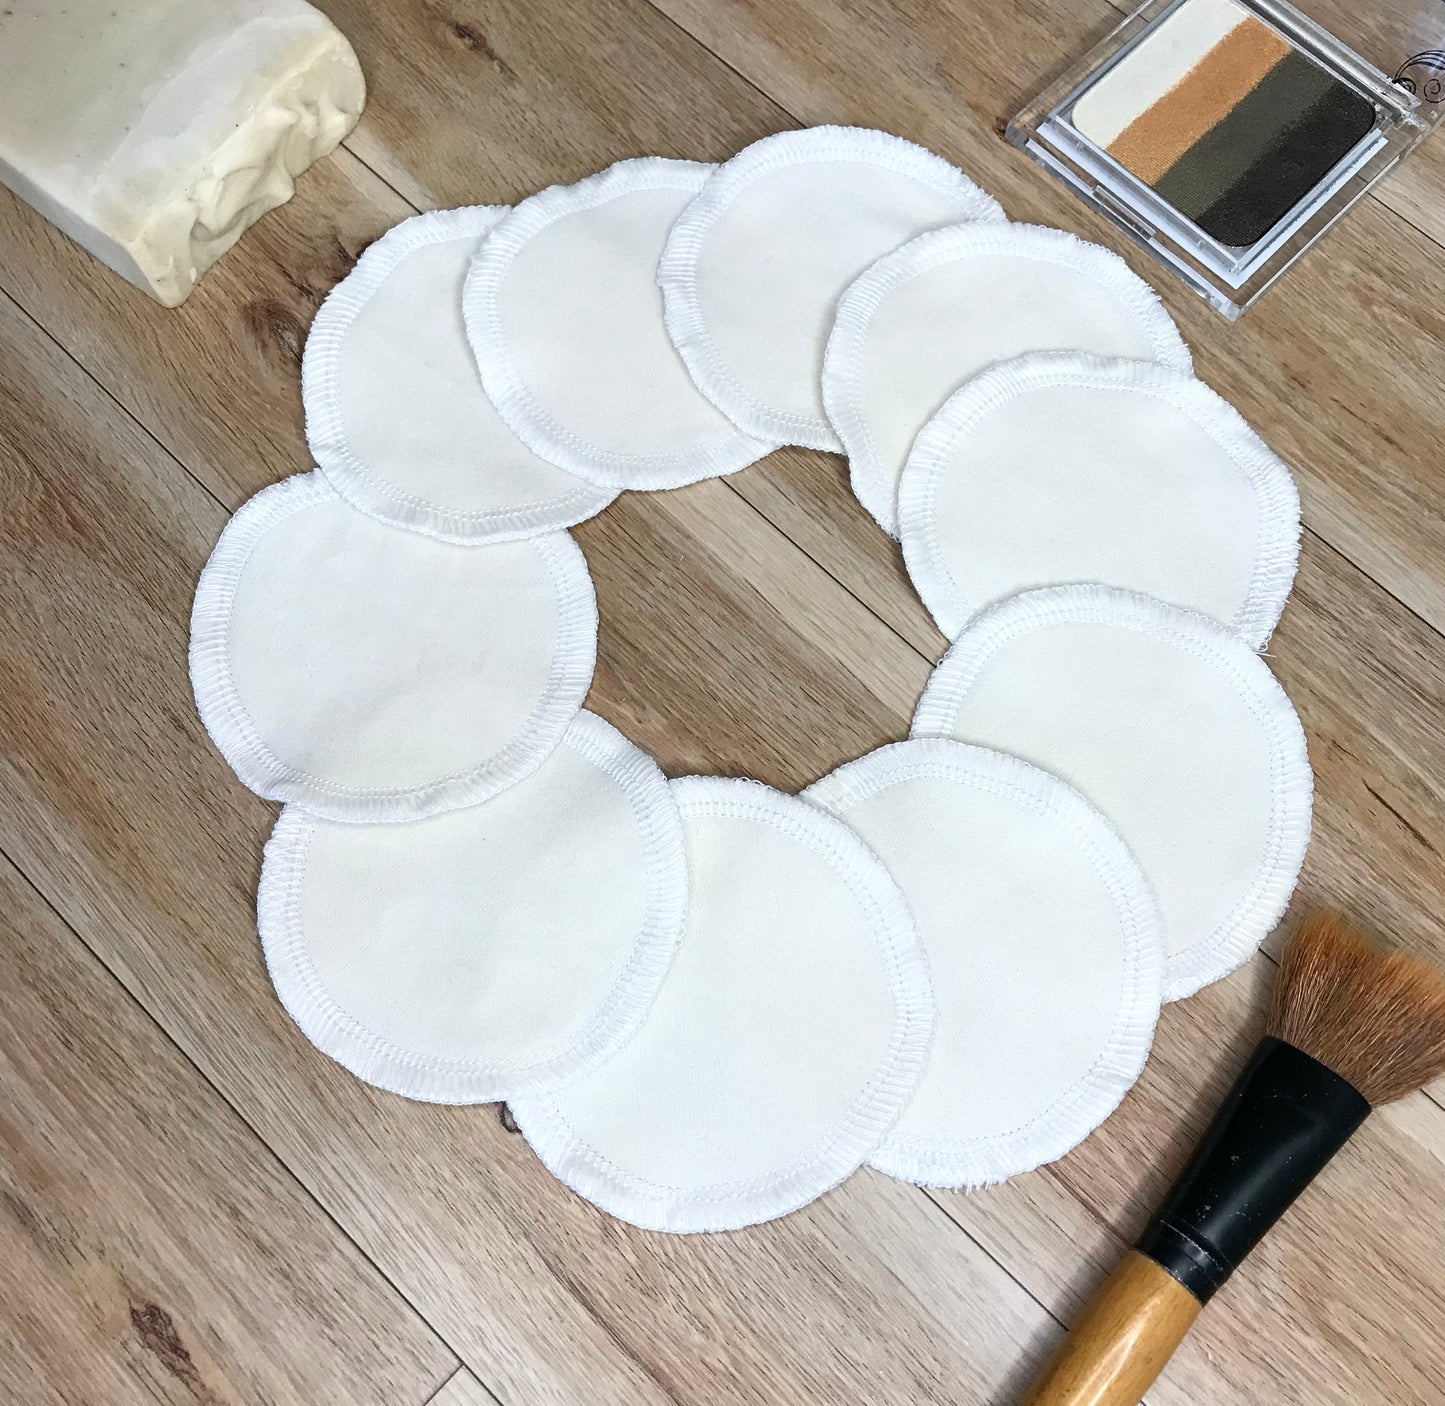 10 Reusable Face rounds/Makeup pads remover